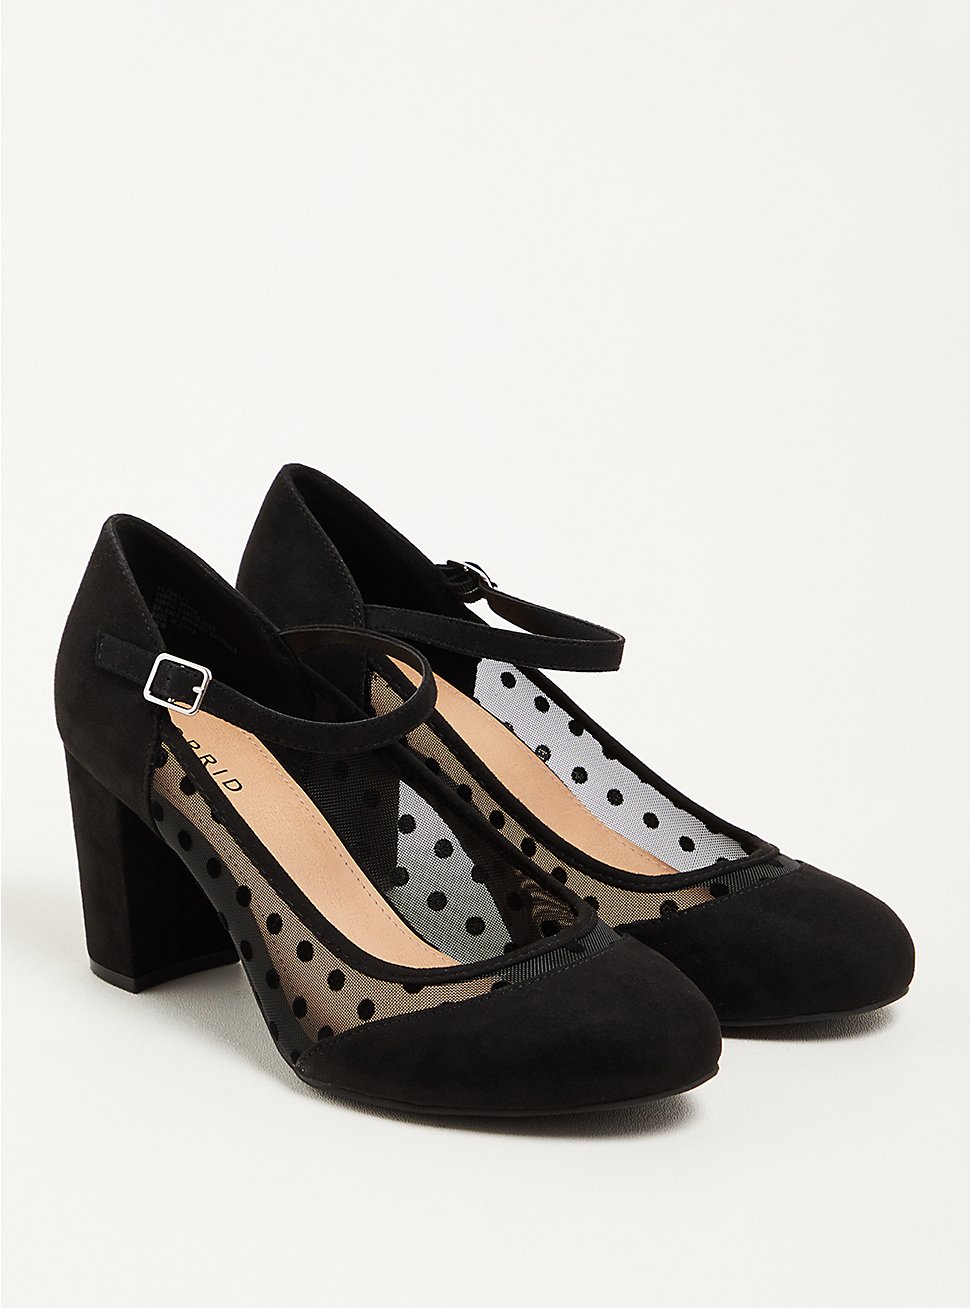 Plus Size Mary Jane Shoe - Faux Suede Mesh Black, BLACK, hi-res